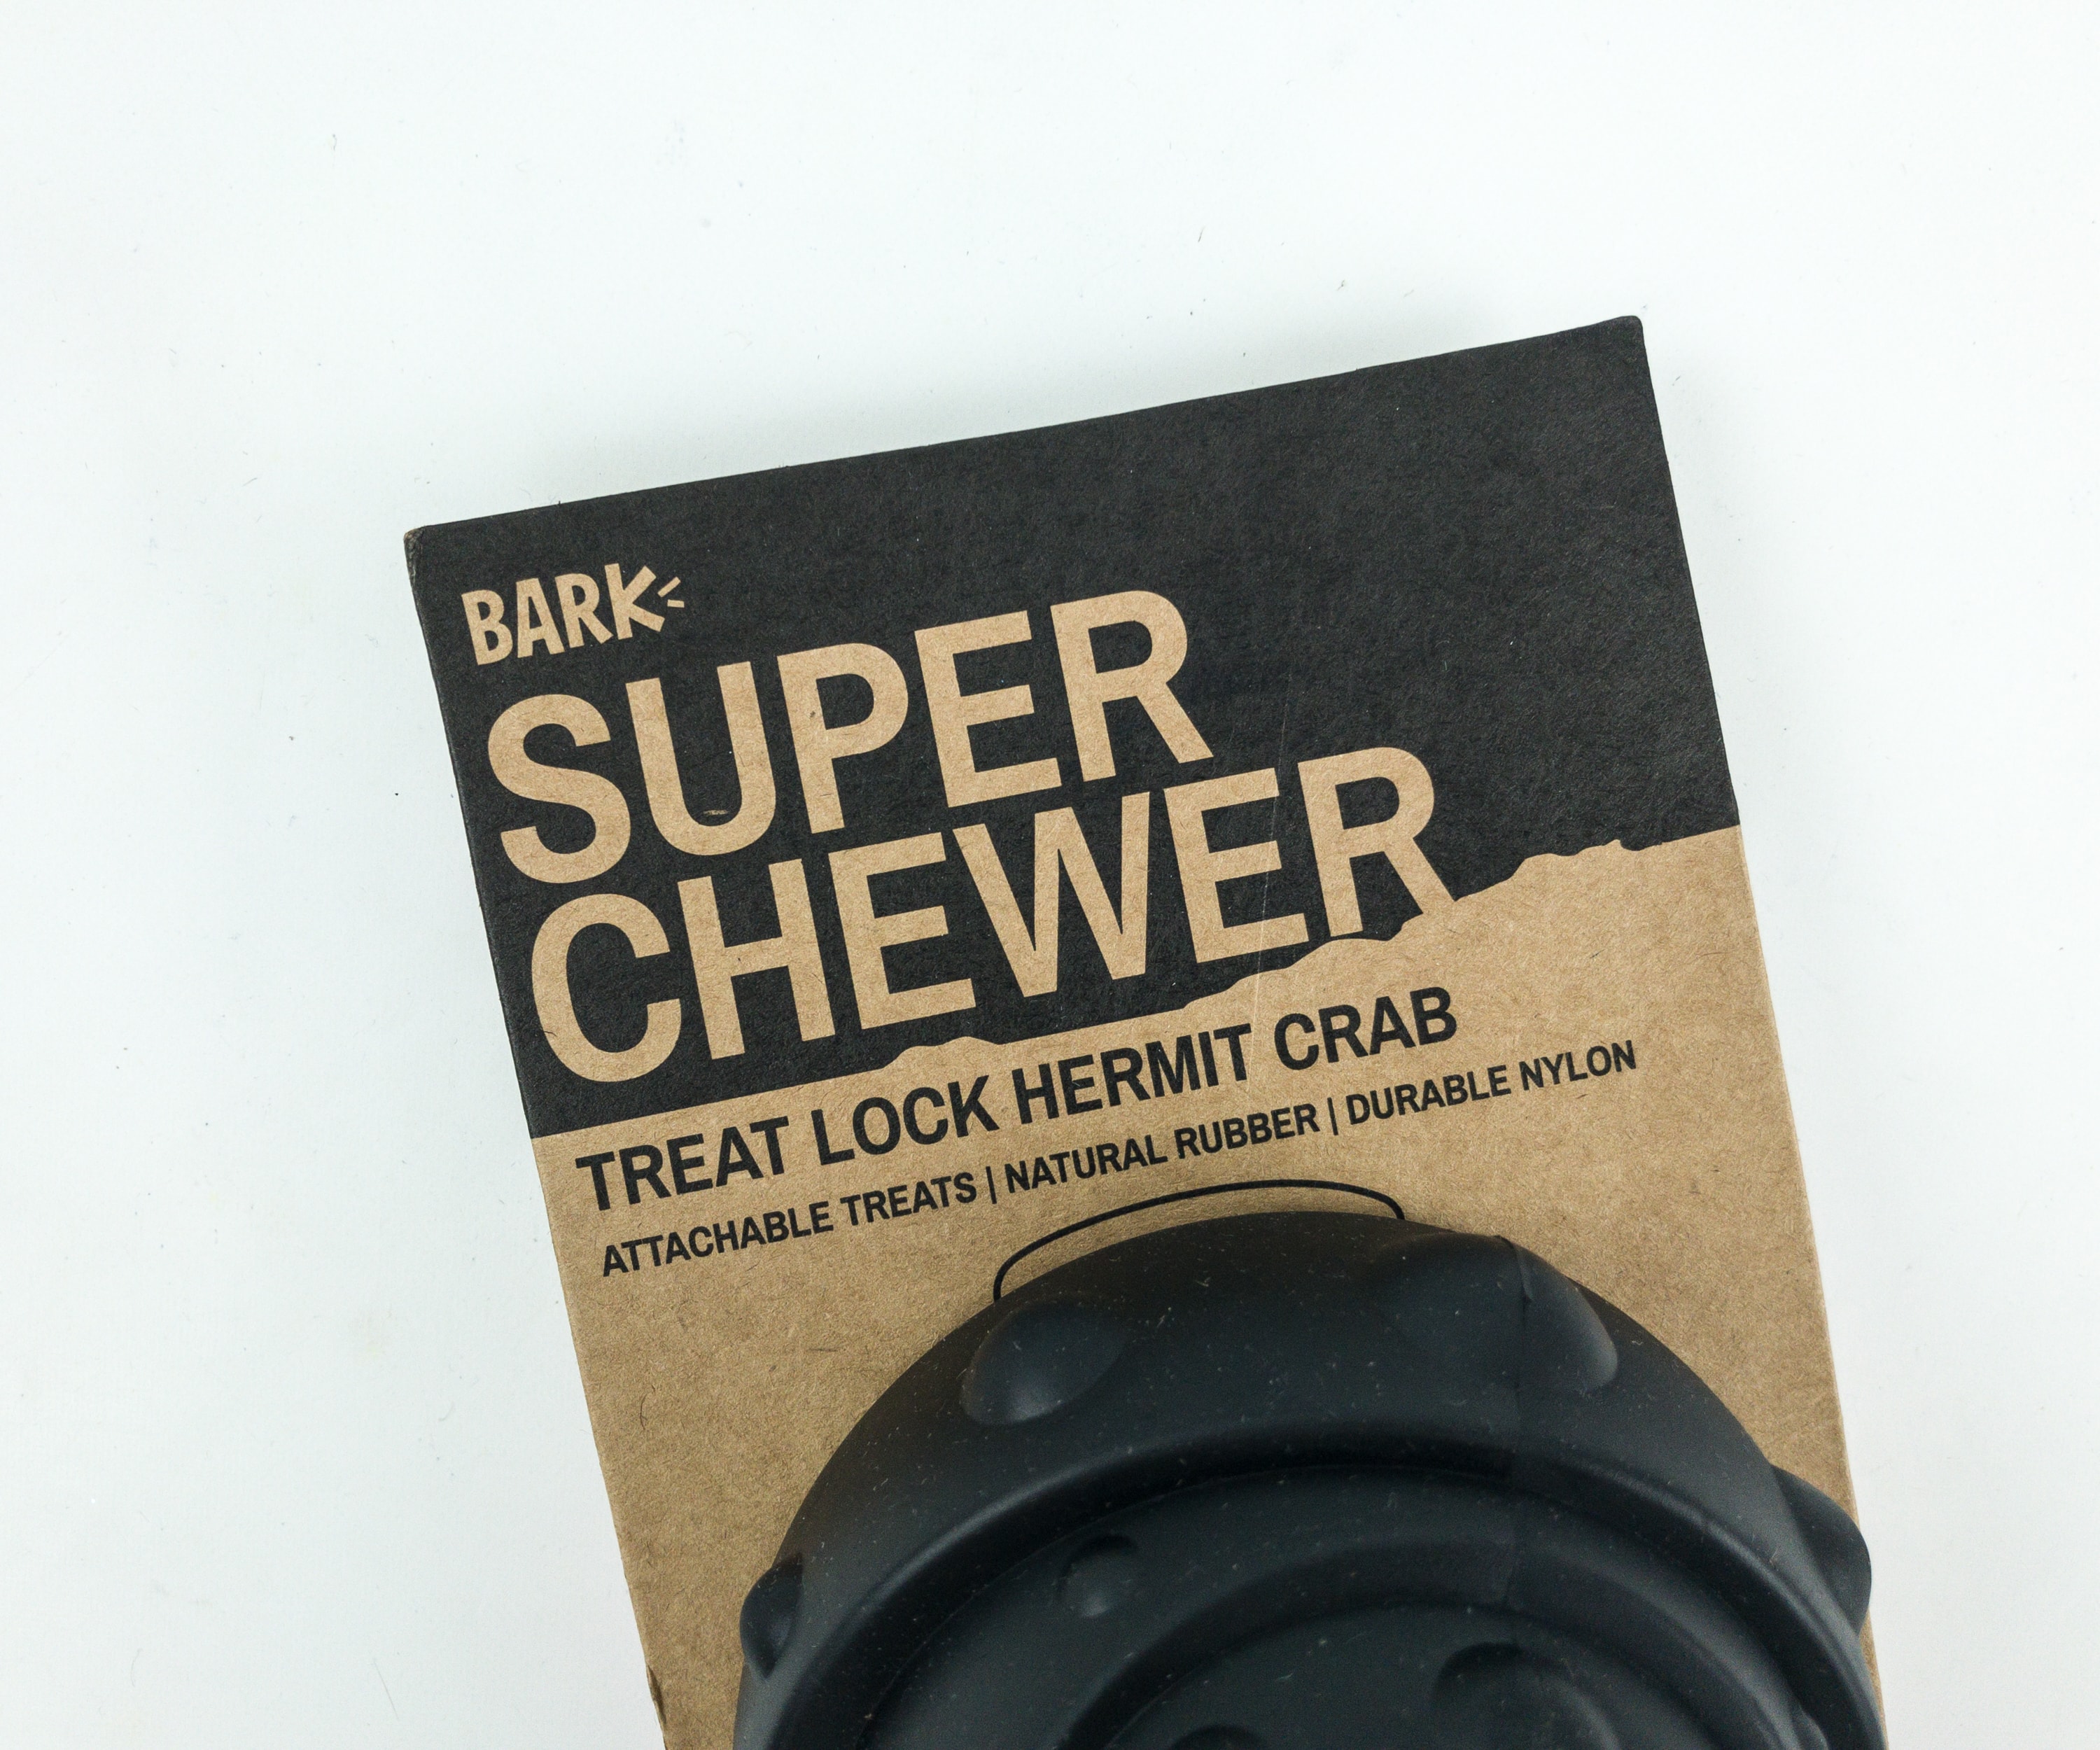 super chewer treat lock treats